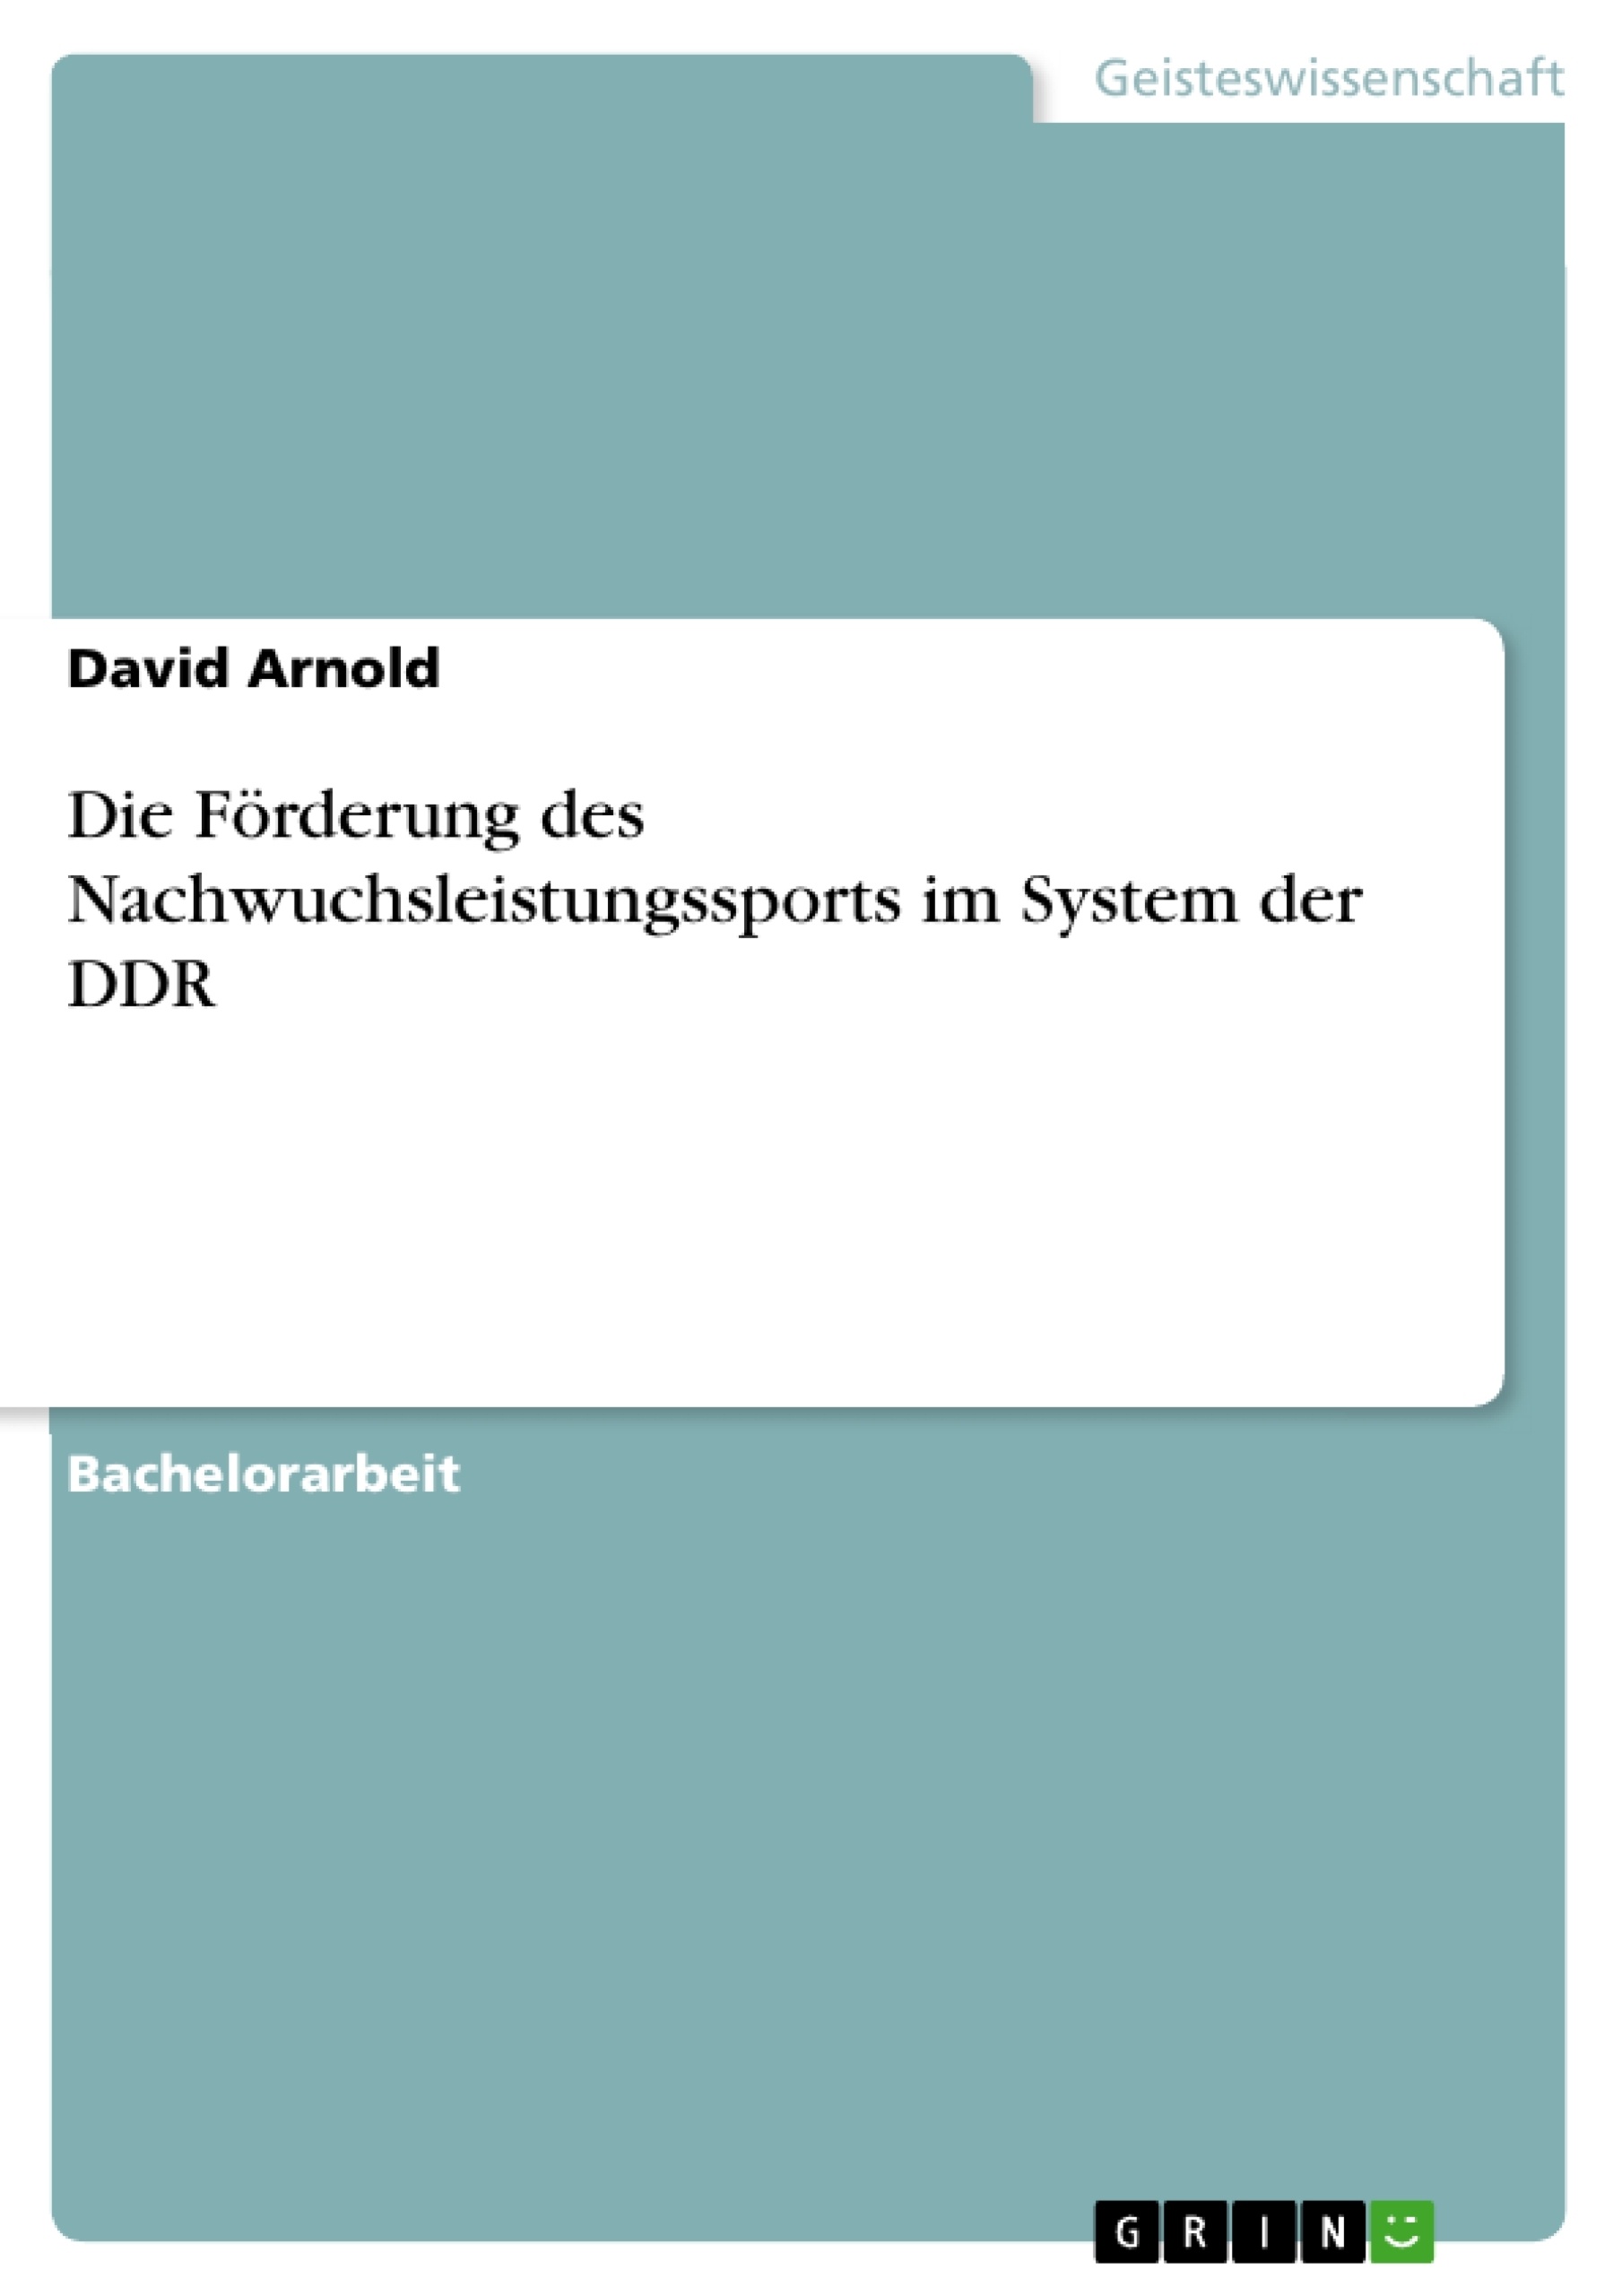 Título: Die Förderung des Nachwuchsleistungssports im System der DDR